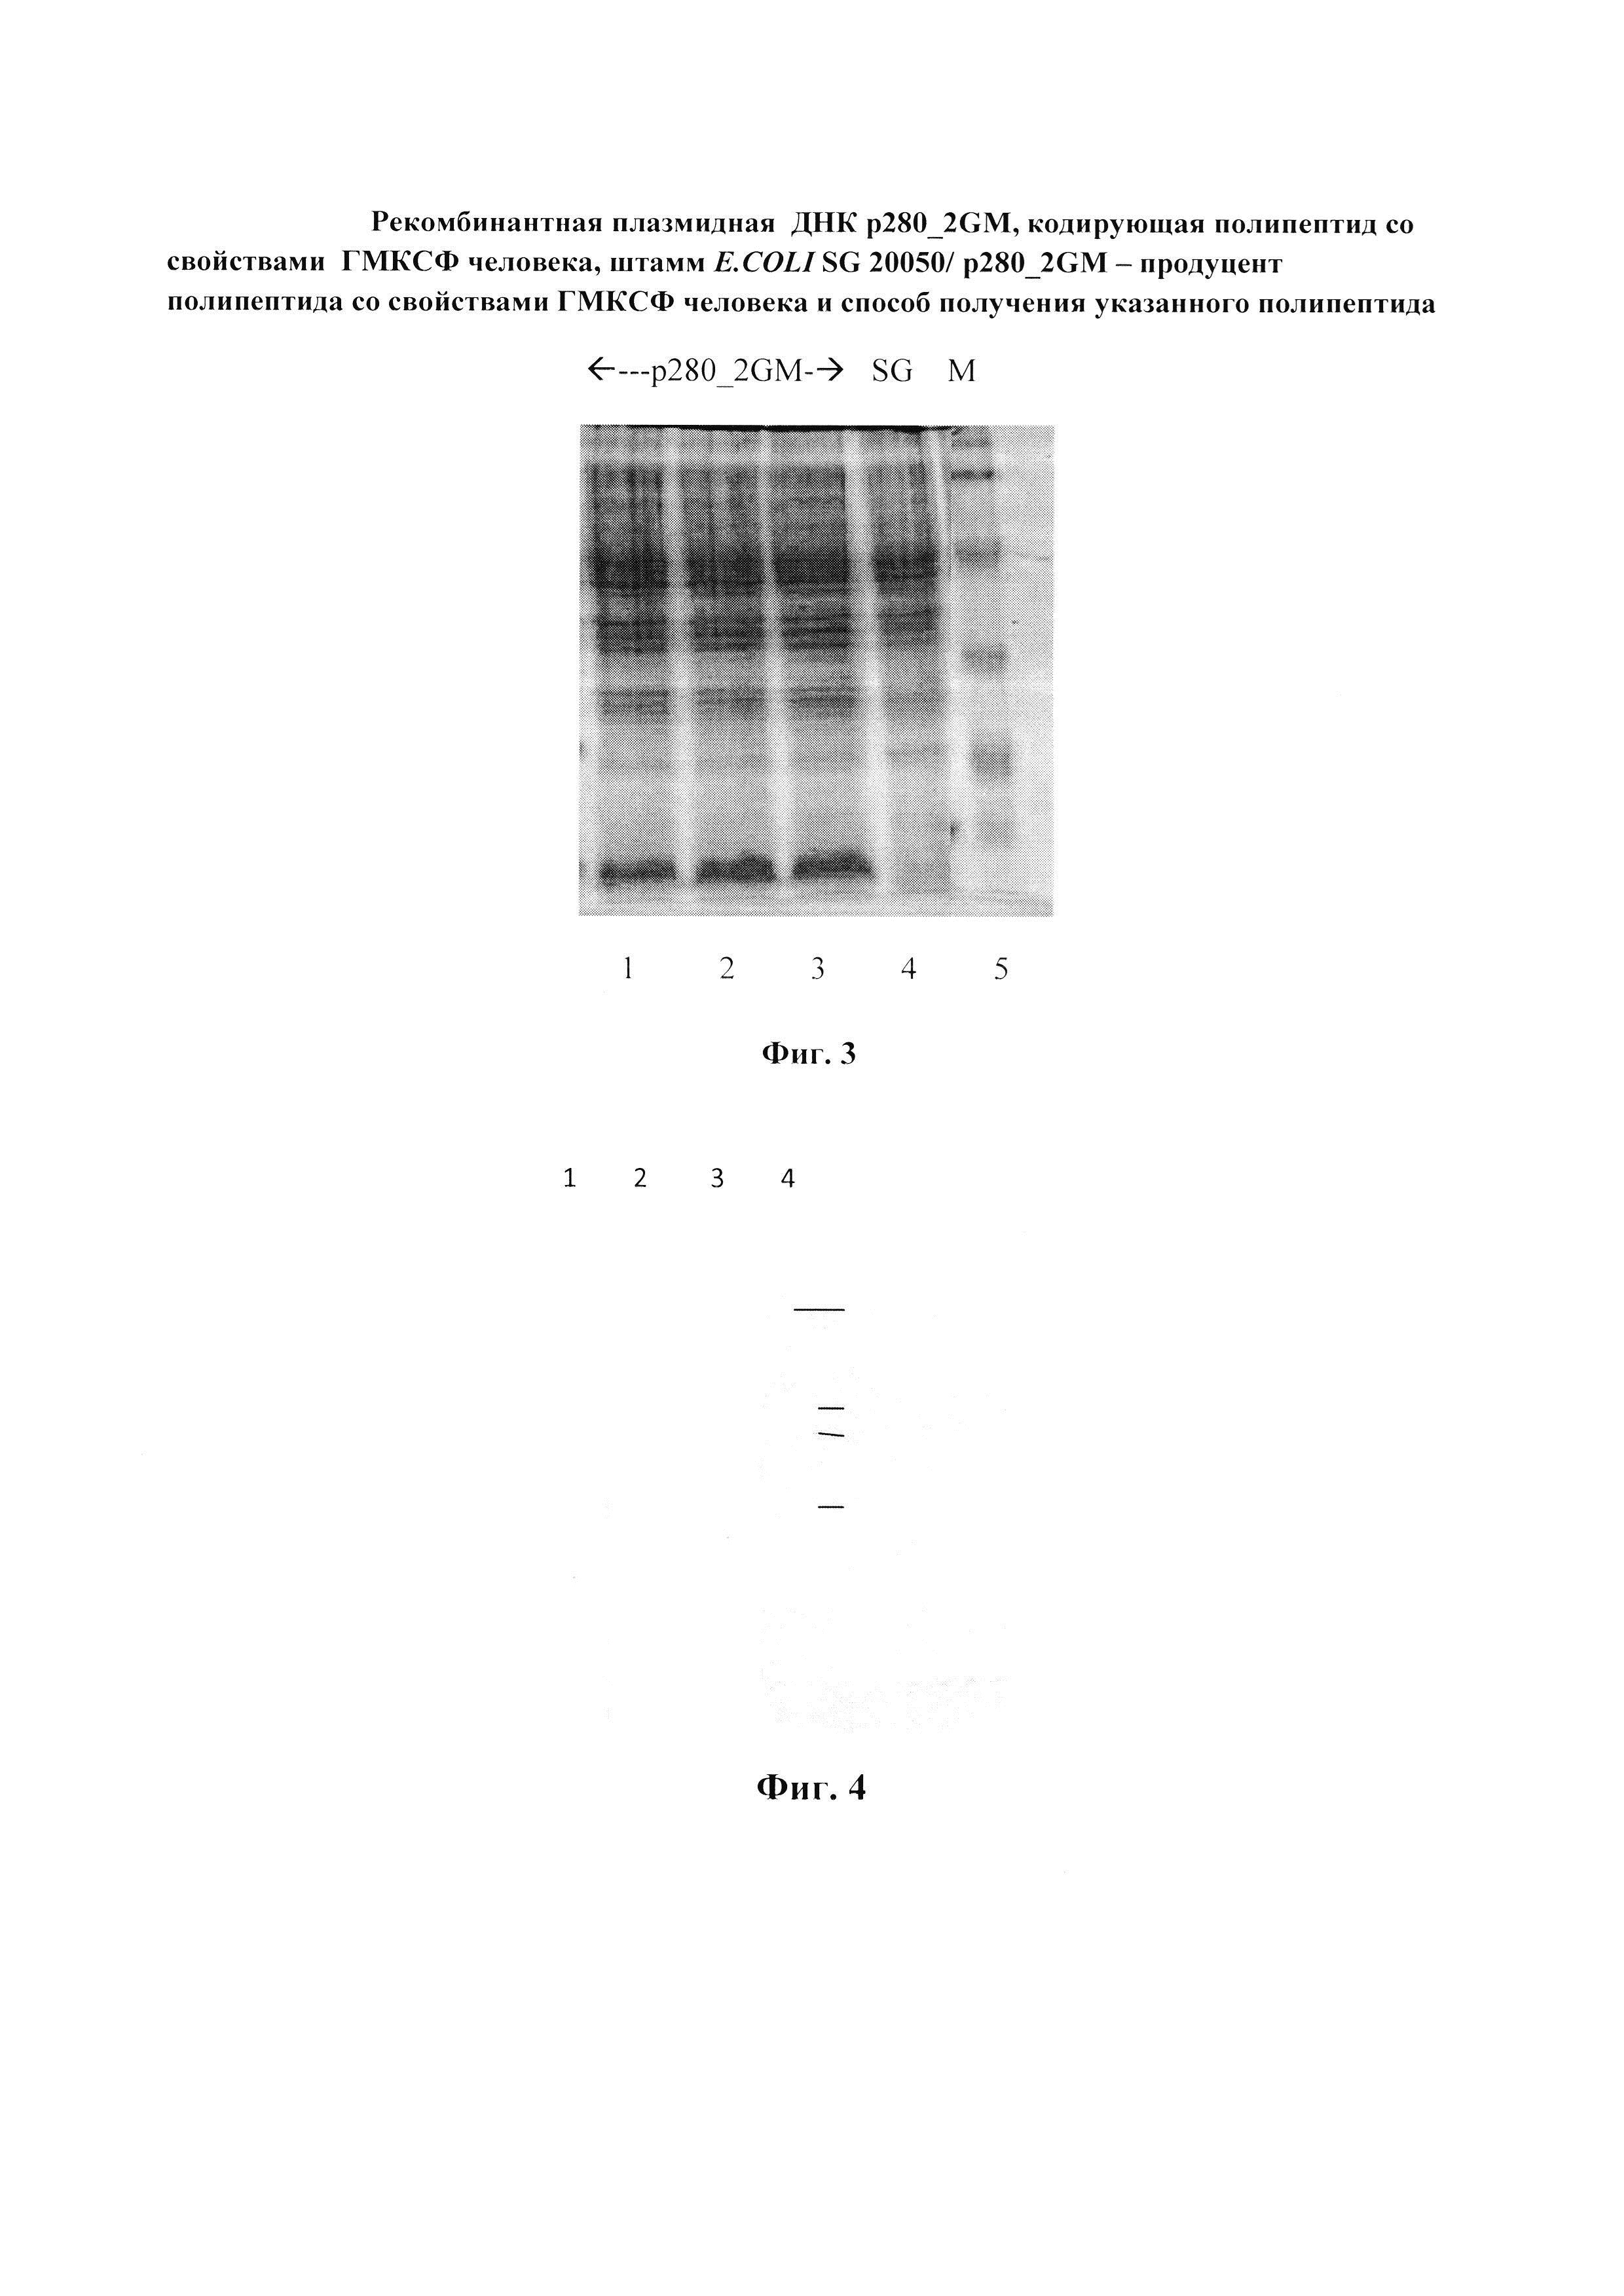 Рекомбинантная плазмидная ДНК p280_2GM, кодирующая полипептид со свойствами гранулоцитарно-макрофагального колониестимулирующего фактора человека, штамм E.COLI SG 20050/ p280_2GM - продуцент полипептида со свойствами гранулоцитарно-макрофагального колониестимулирующего фактора человека и способ получения указанного полипептида